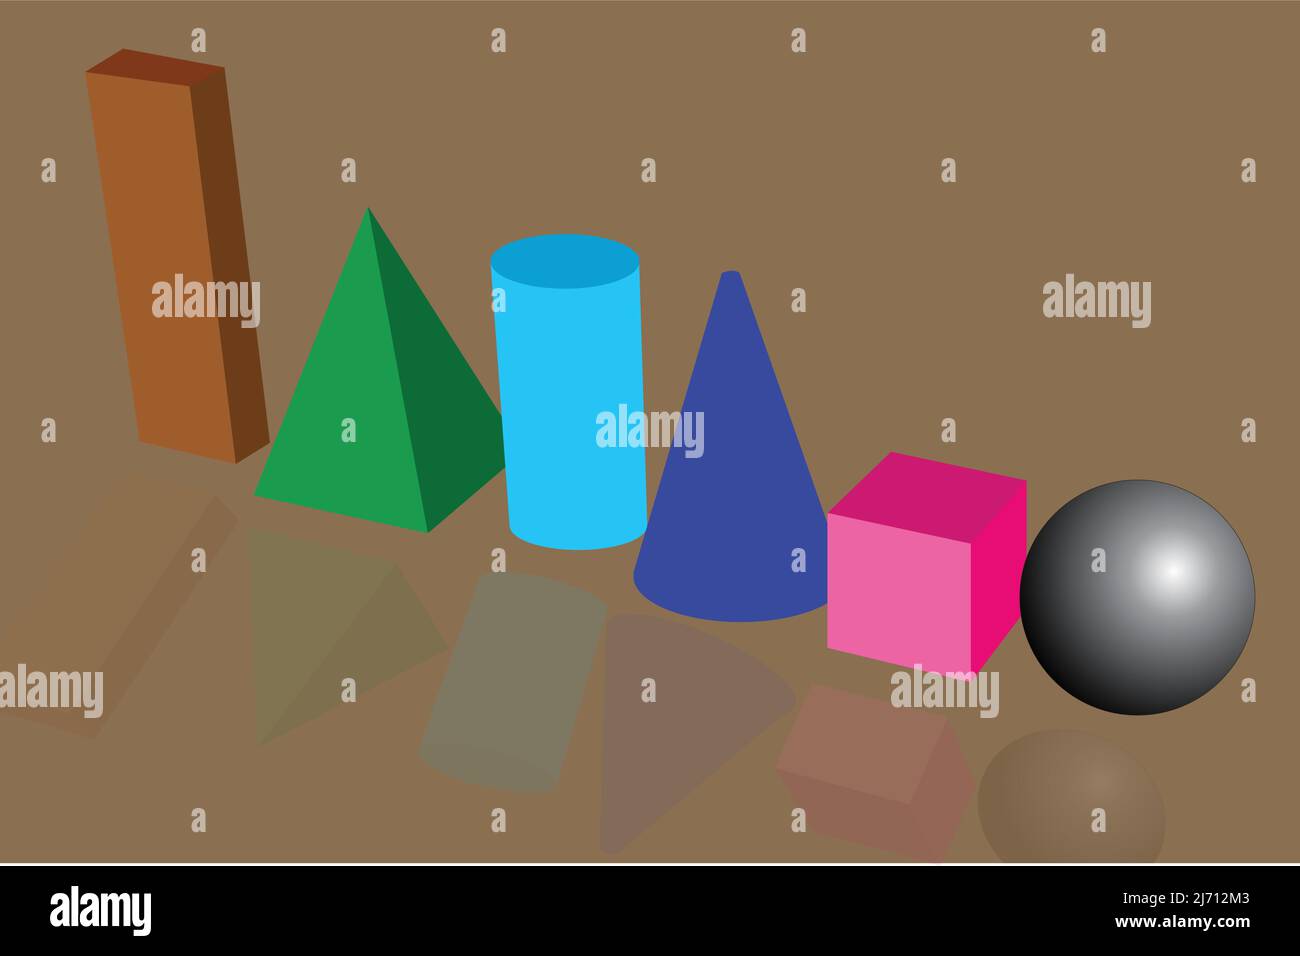 illustrazione di 3d forme di cubo, cilindro, cono, sfera, ecc., Illustrazione Vettoriale